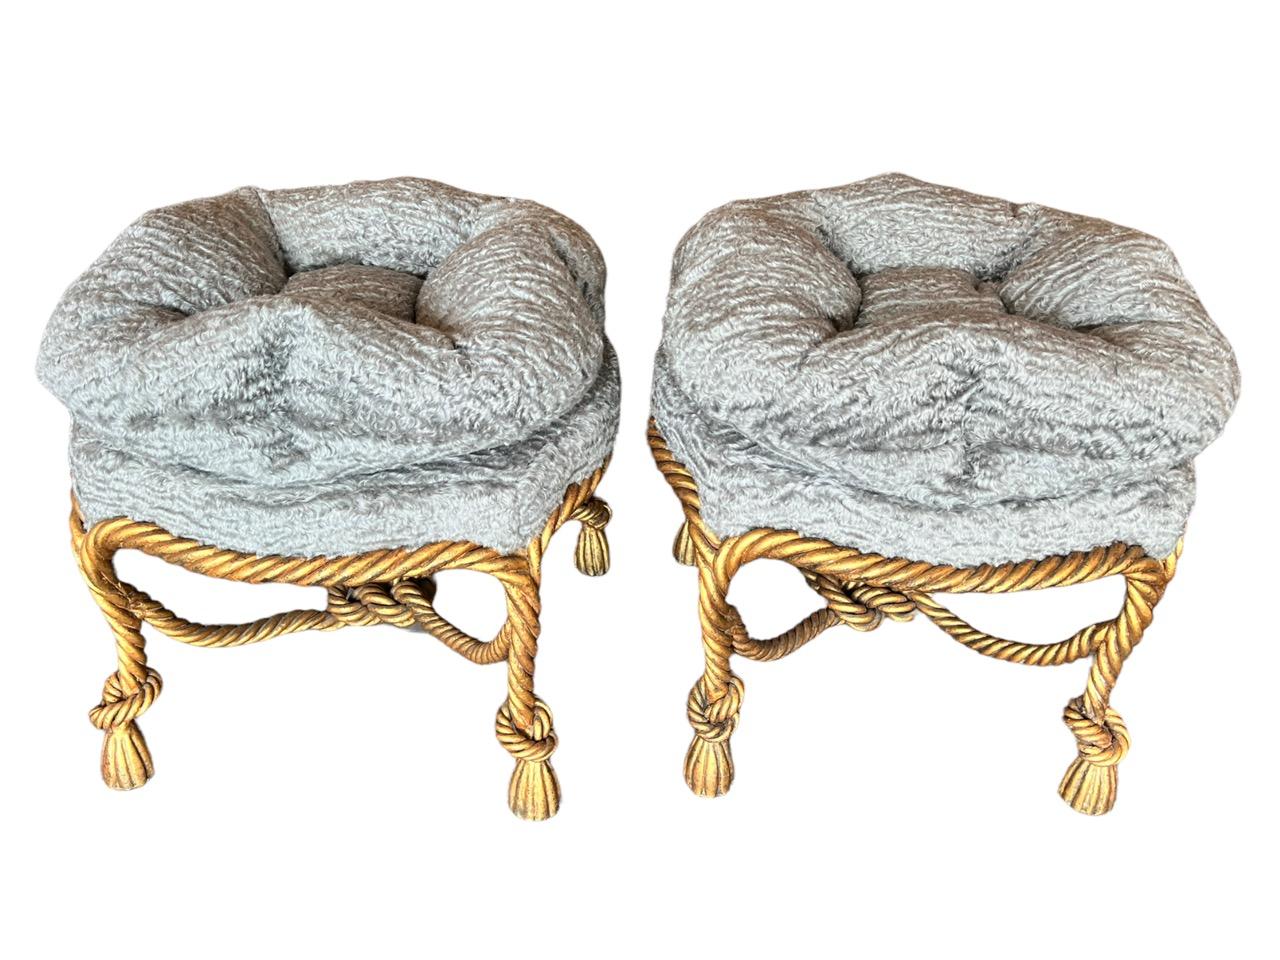 Ein Paar italienische Boudoir-Hocker aus vergoldetem Metall mit Seil und Quasten aus dem frühen 20. Jahrhundert mit einem gepolsterten, getufteten, runden Kissensitz aus grauem Mohairstoff von Holly Hunt namens Mammoth.
 